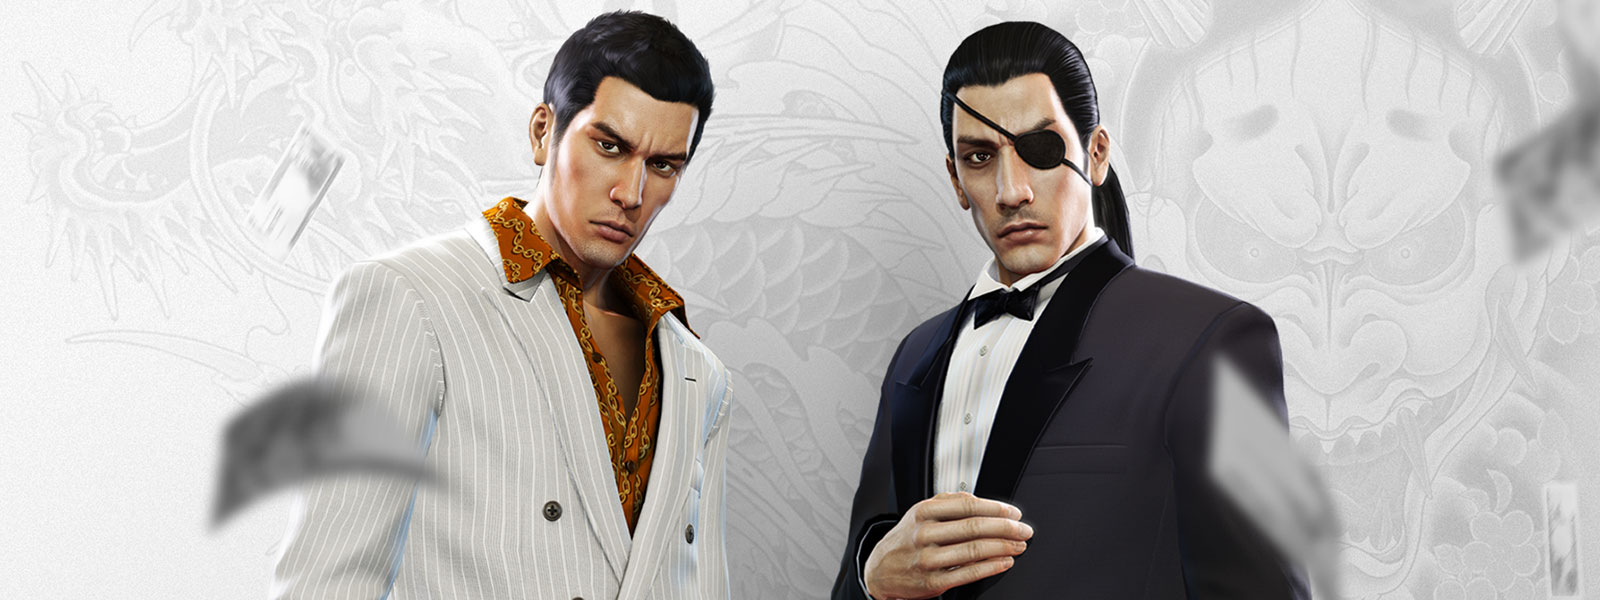 Twee Yakuza-personages in chique pakken staren terwijl er geld rond hen heen dwarrelt, met een grijs/witte achtergrond van een draaktatoeage